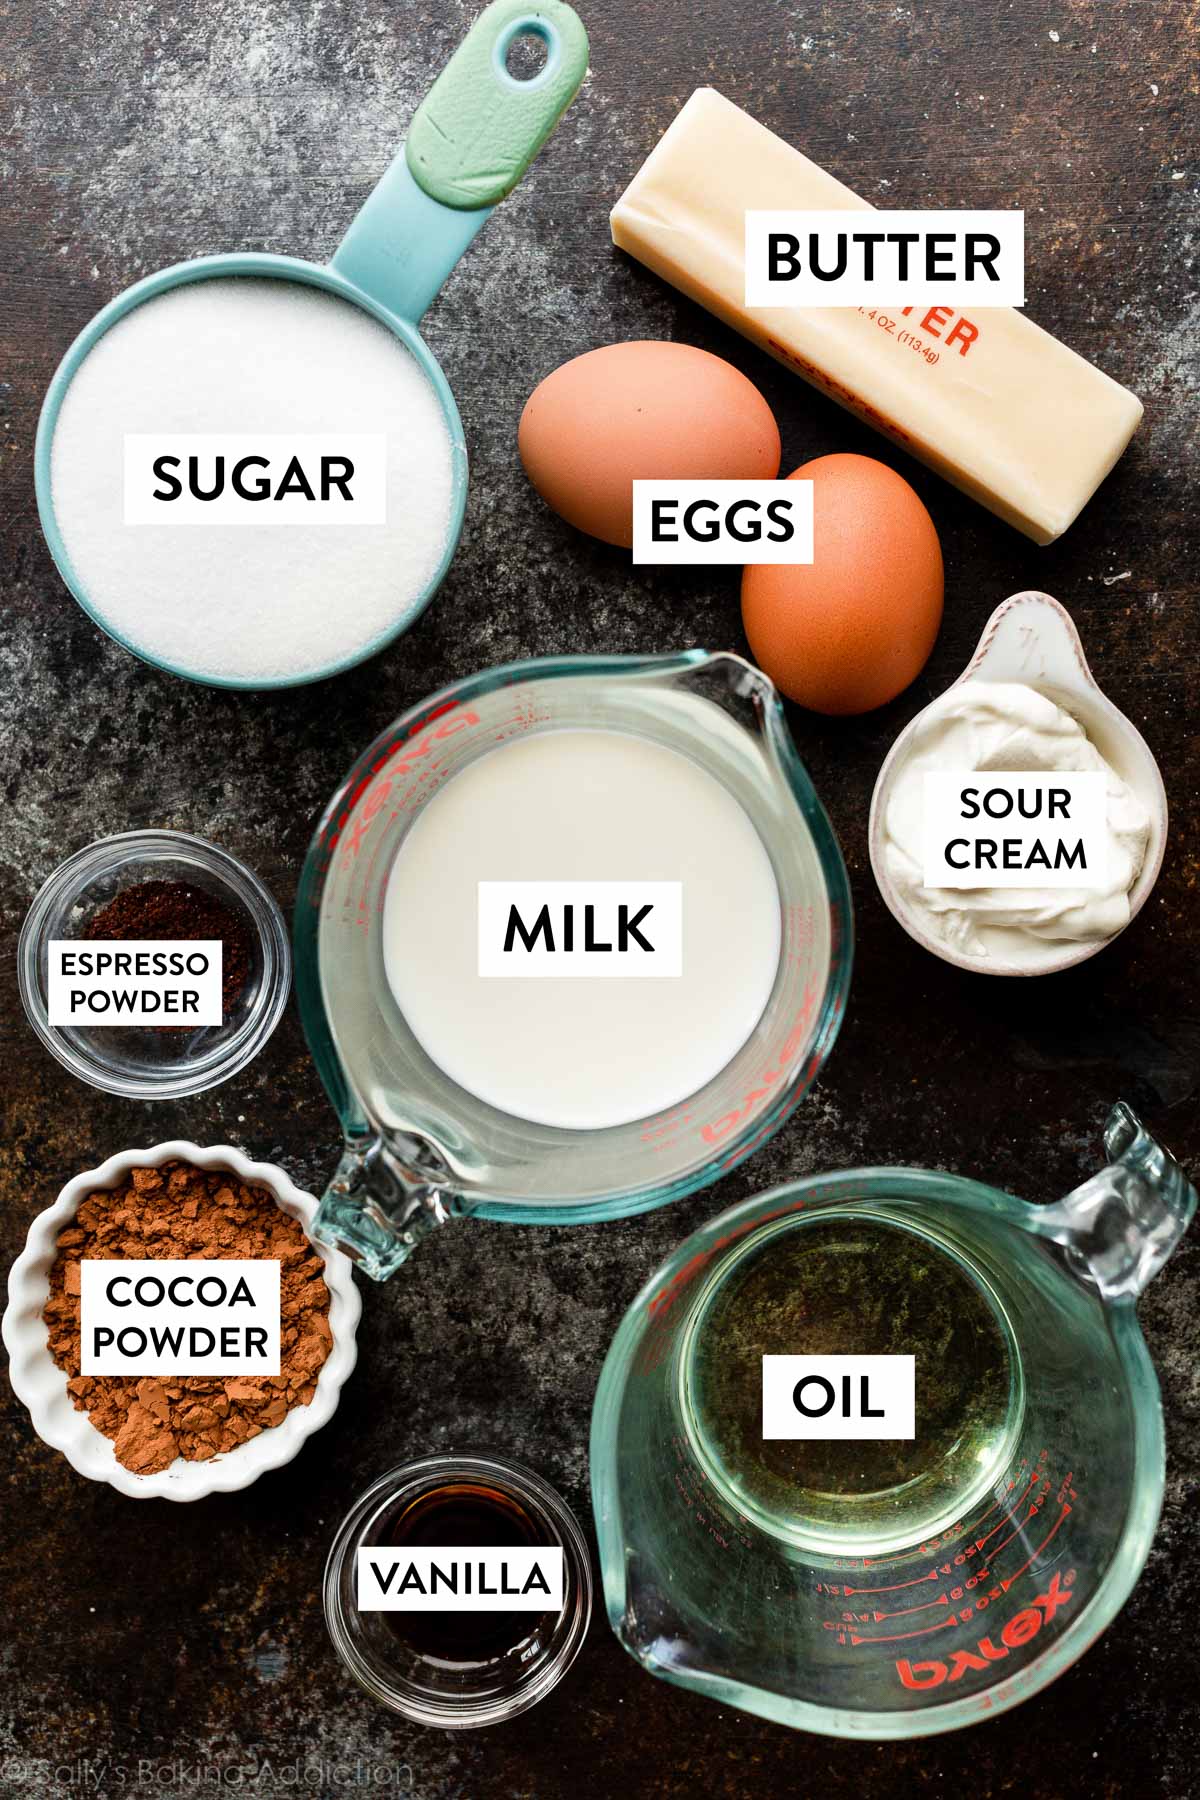 Les ingrédients sur le comptoir noir comprennent du sucre, du beurre, des œufs, du lait, de l'huile, etc.